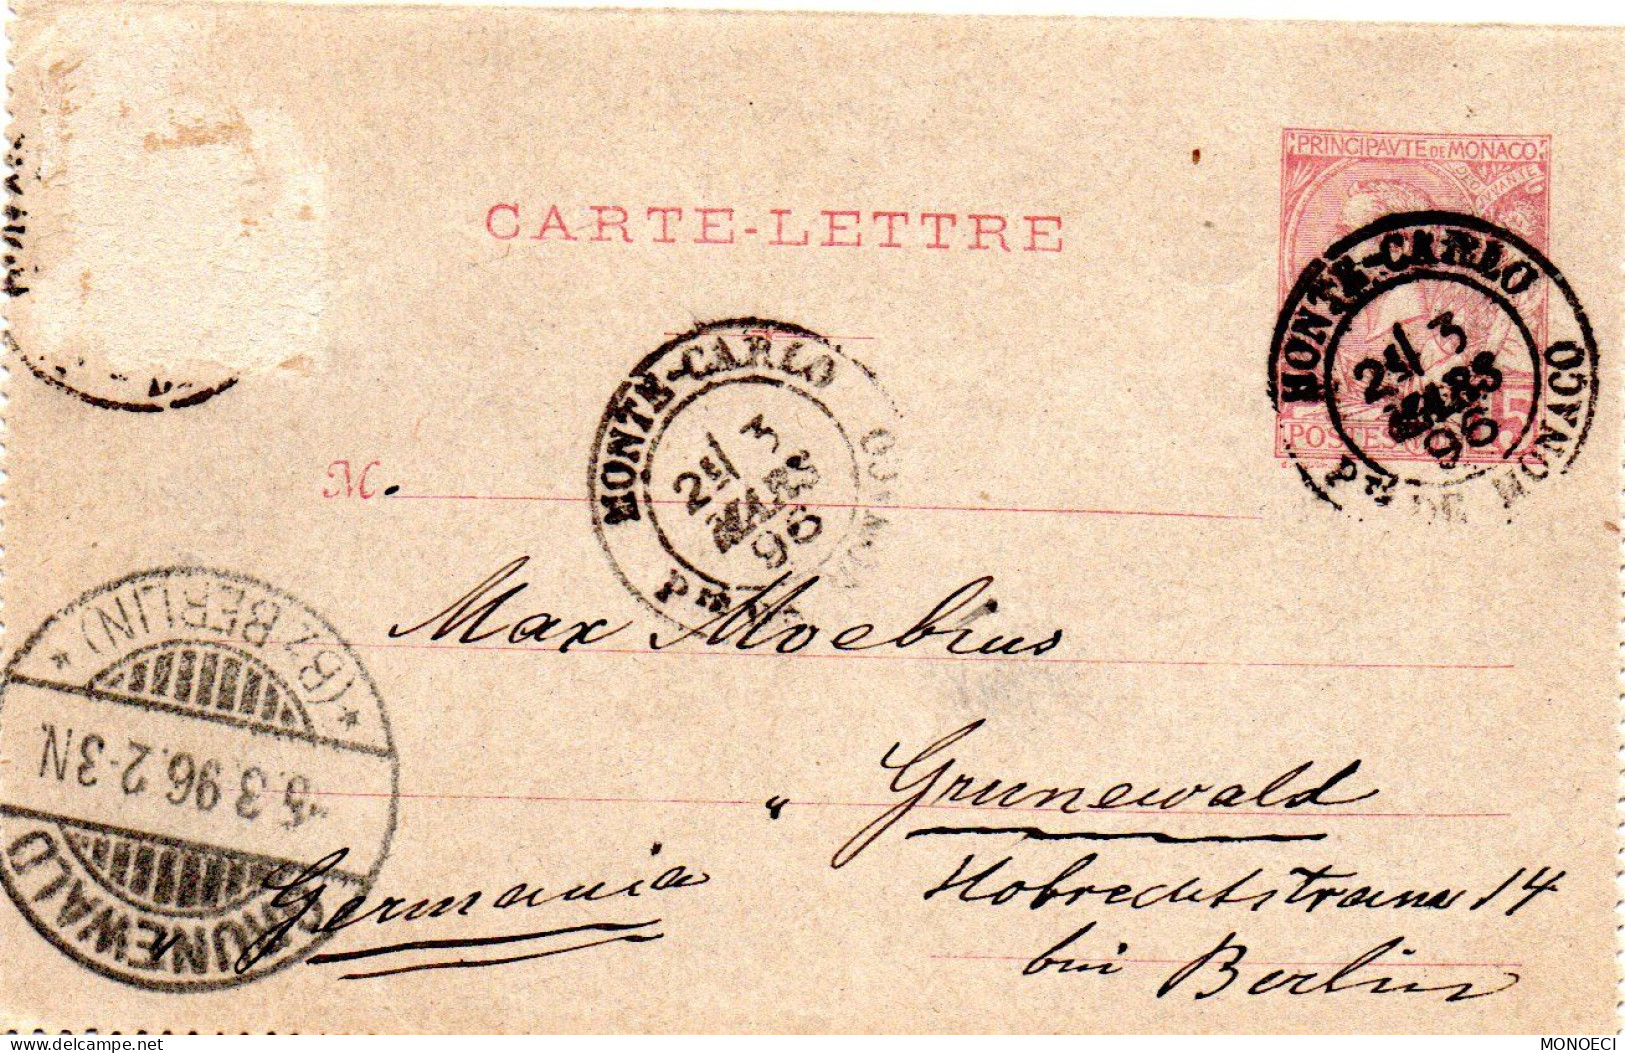 MONACO -- MONTE CARLO -- Entier Postal -- Carte Lettre -- Prince Albert 1er -- 10 C. Carmin Sur Gris (1891) - Entiers Postaux